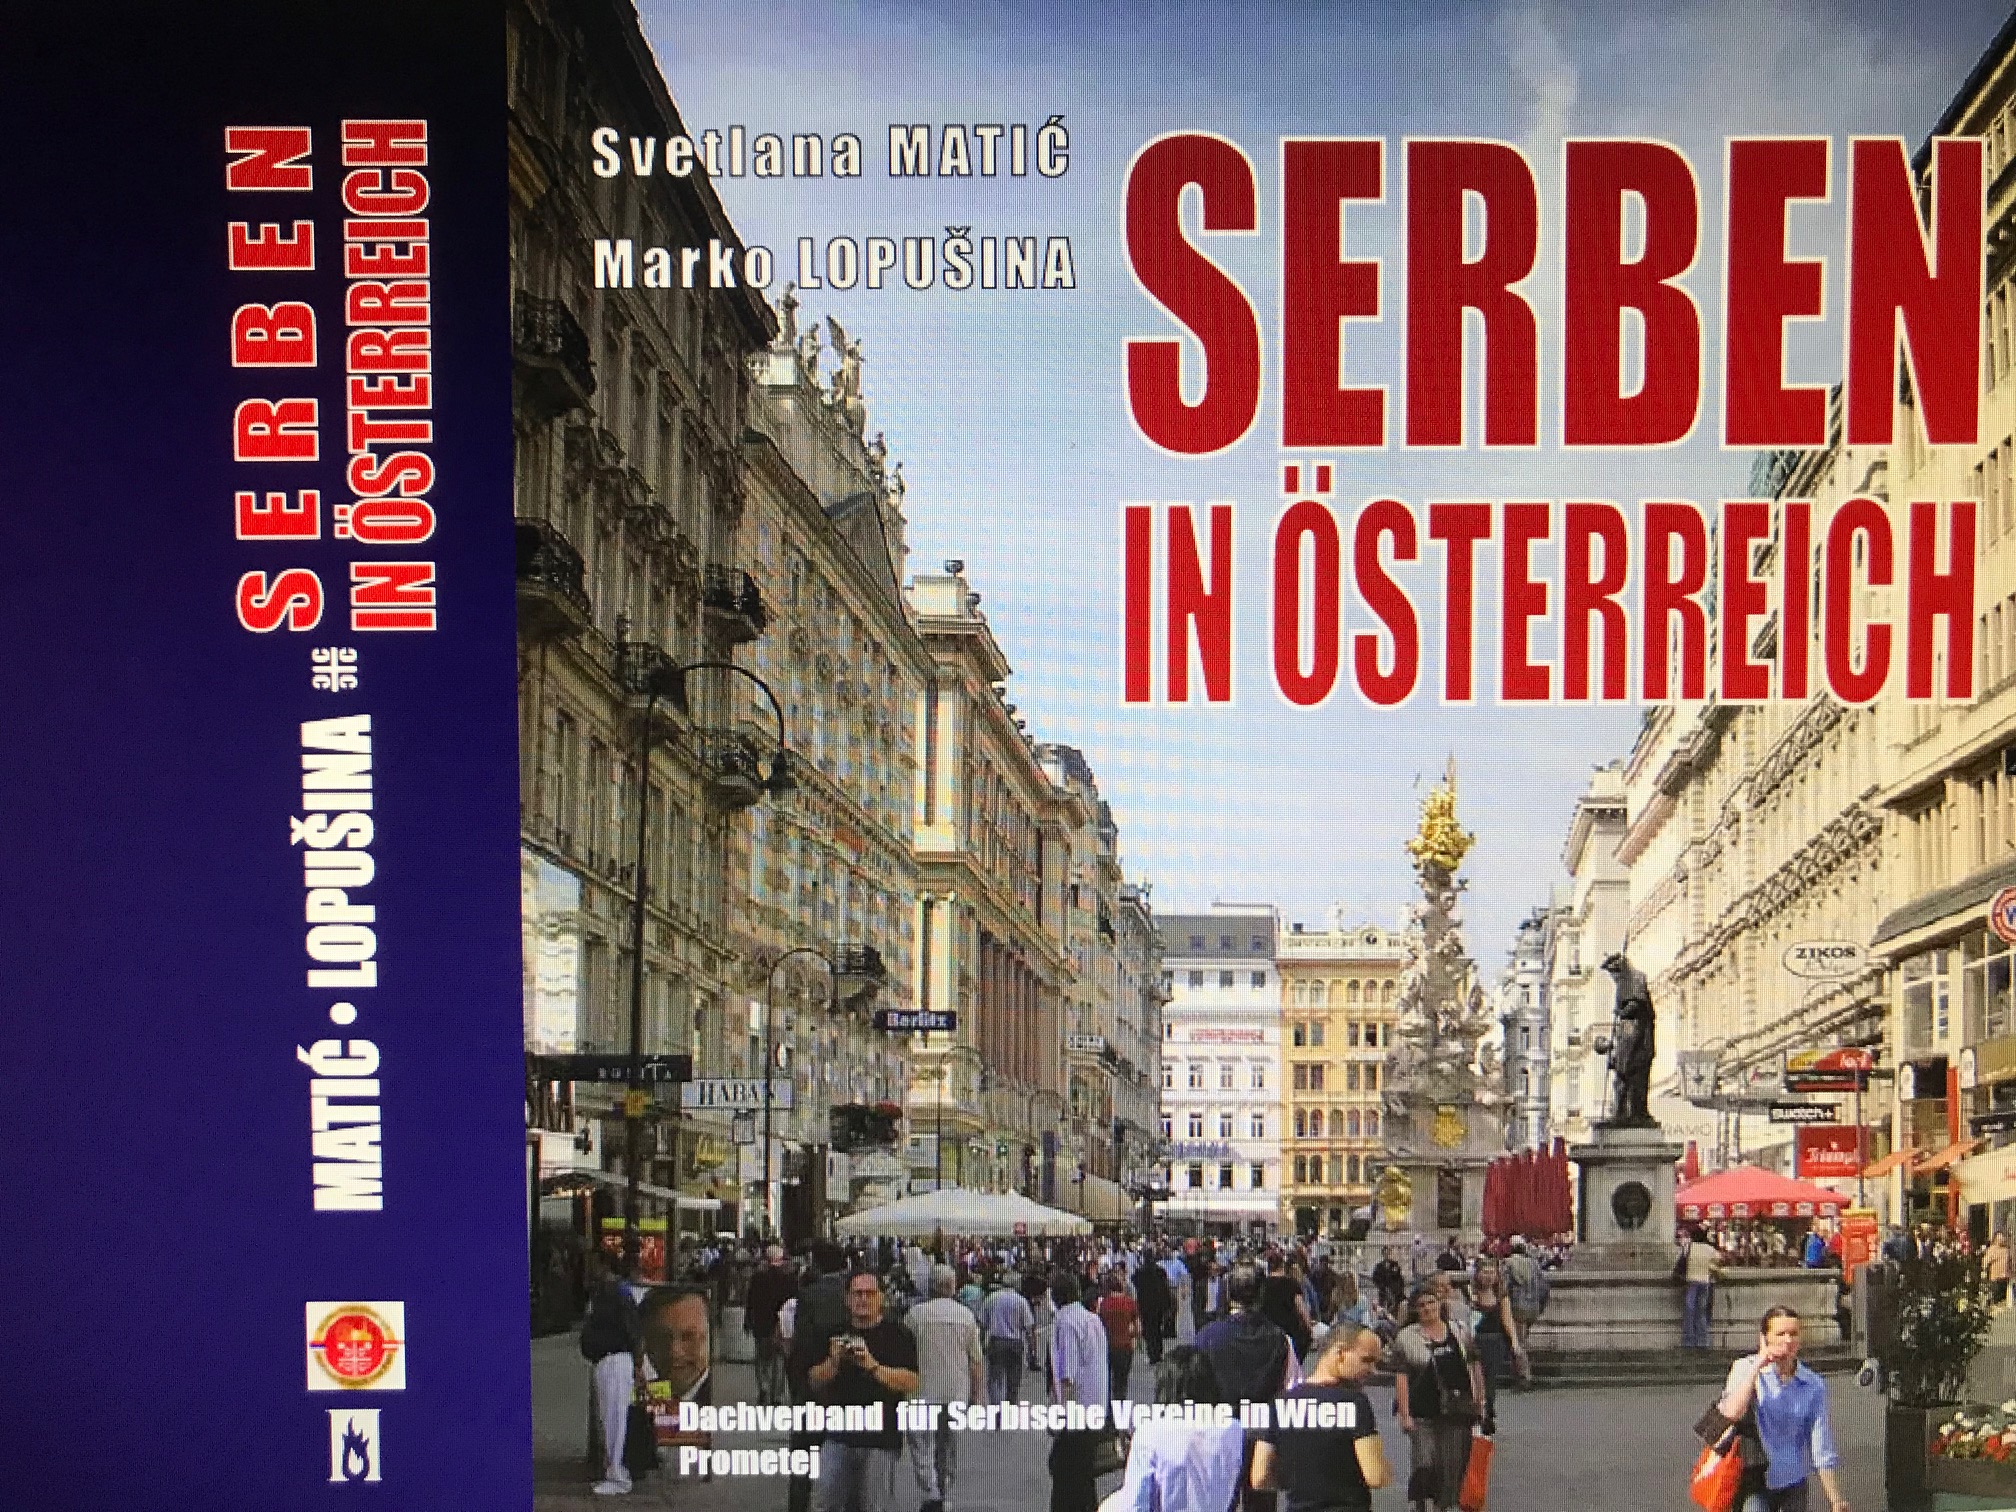 Објављена књига „Срби у Аустрији“ на немачком за Аустријанце